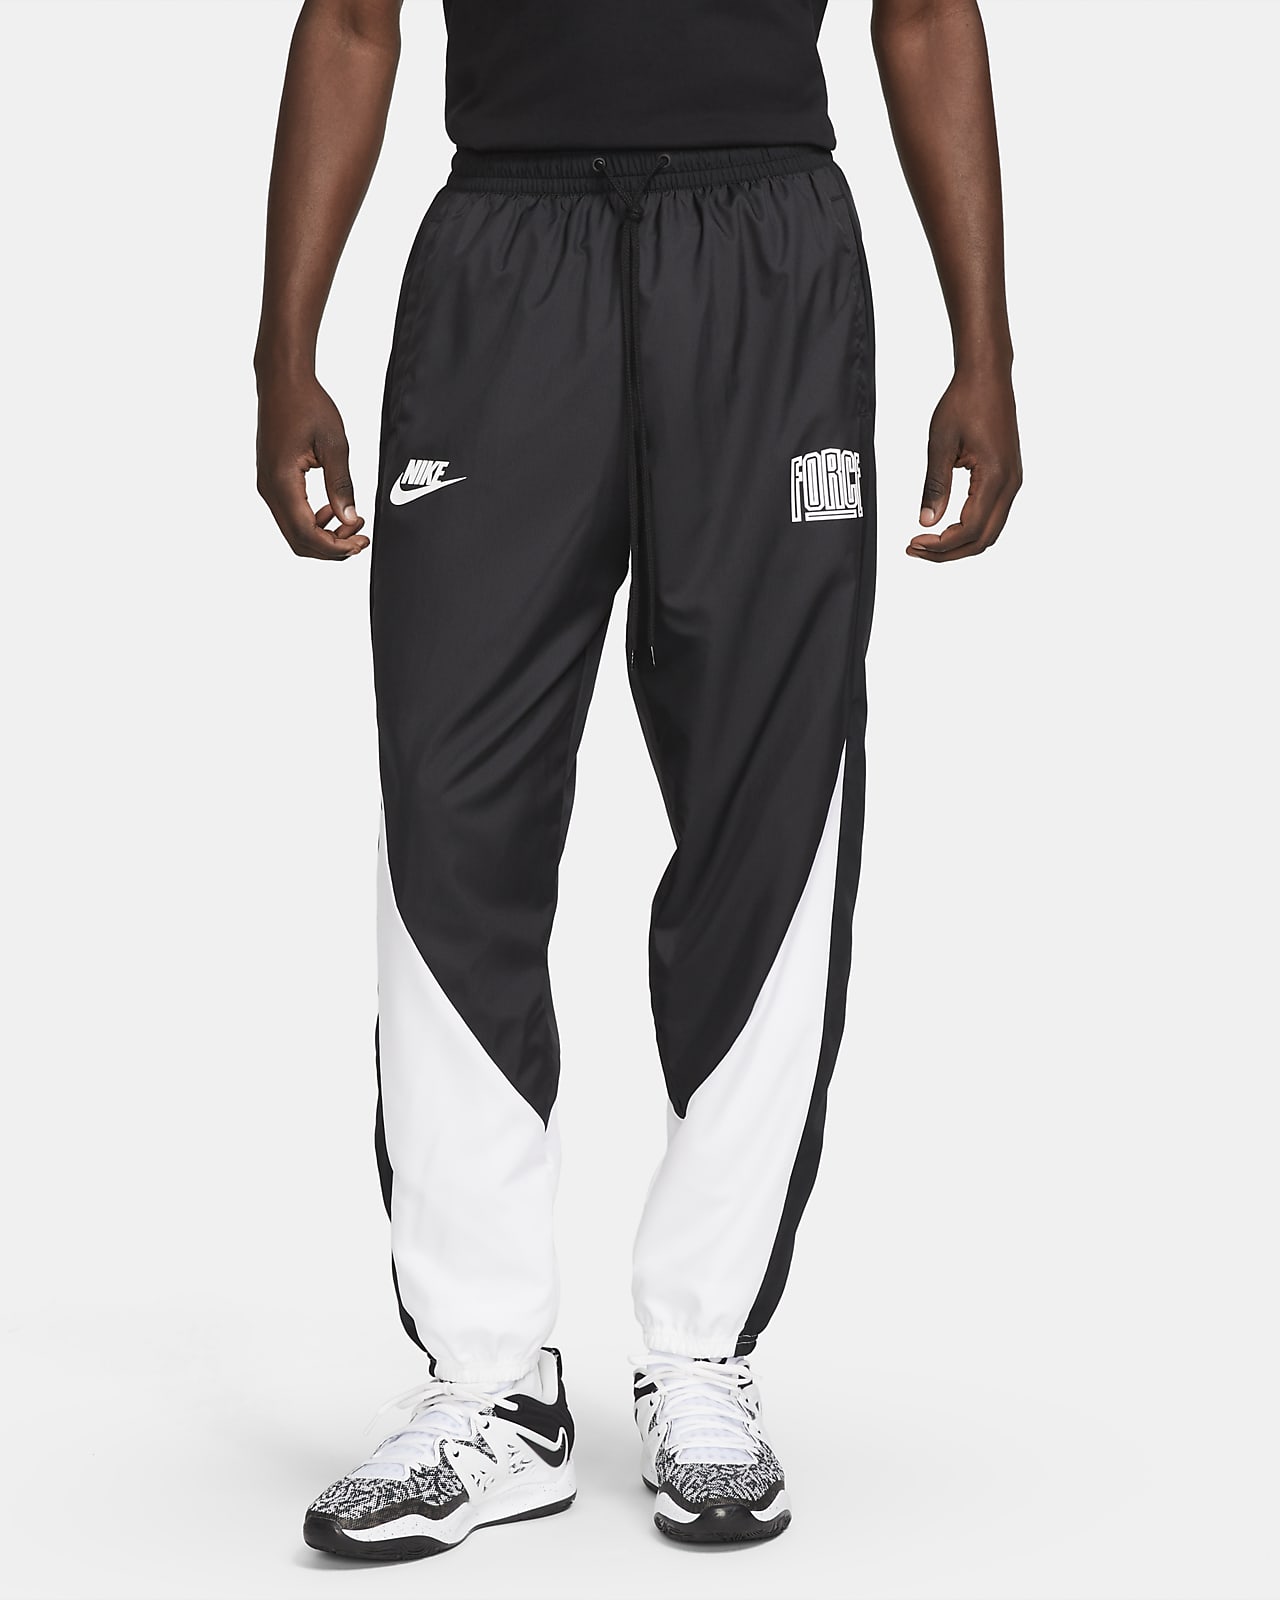 Męskie spodnie do koszykówki Nike Starting 5